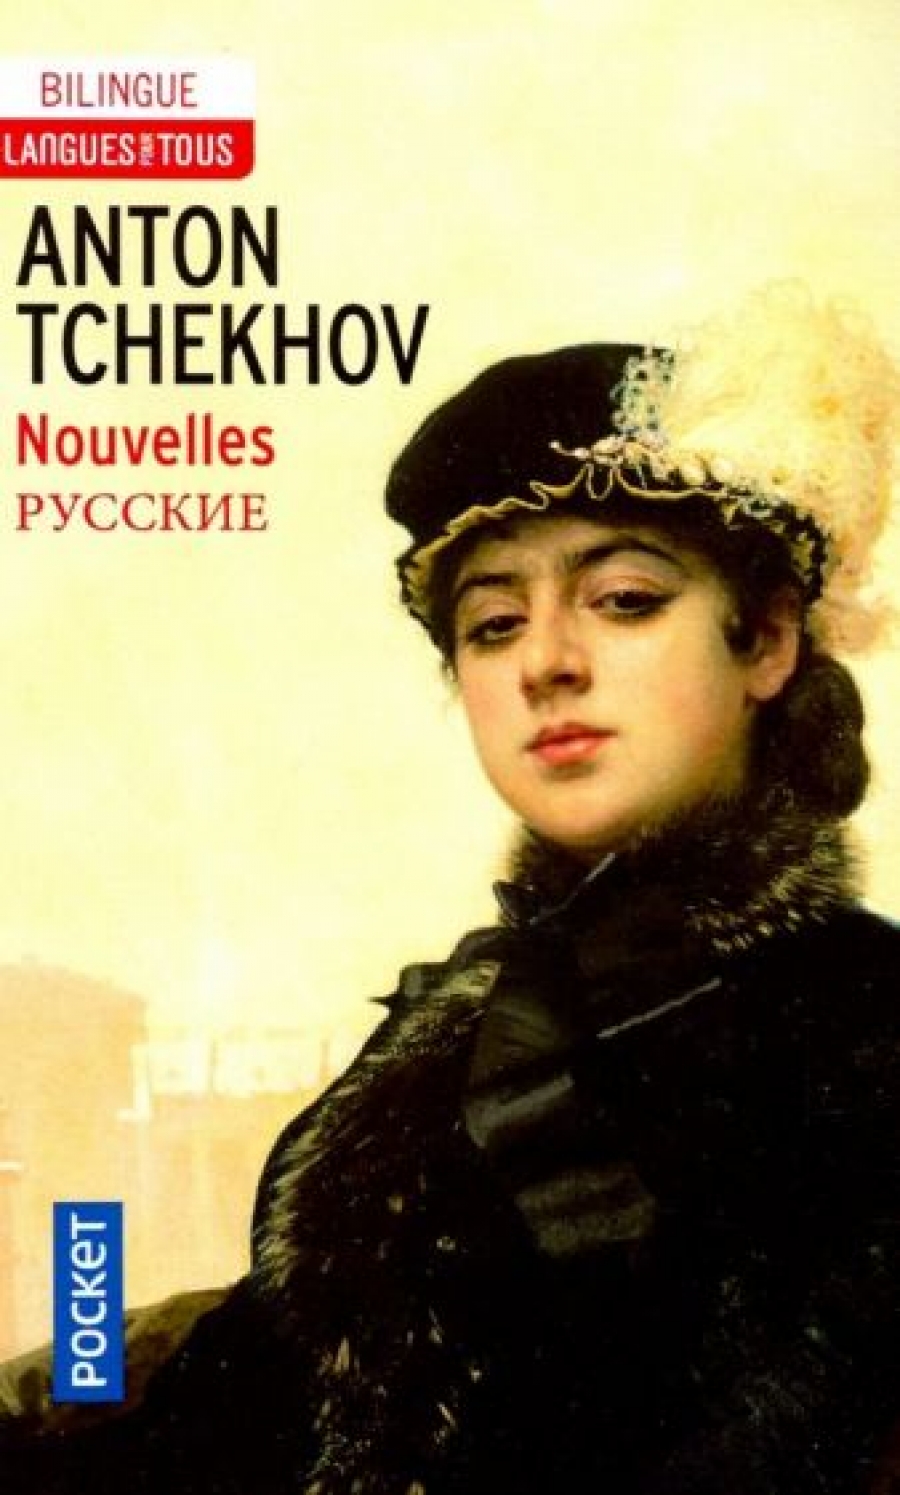 Anton T. Nouvelles de Tchekhov 